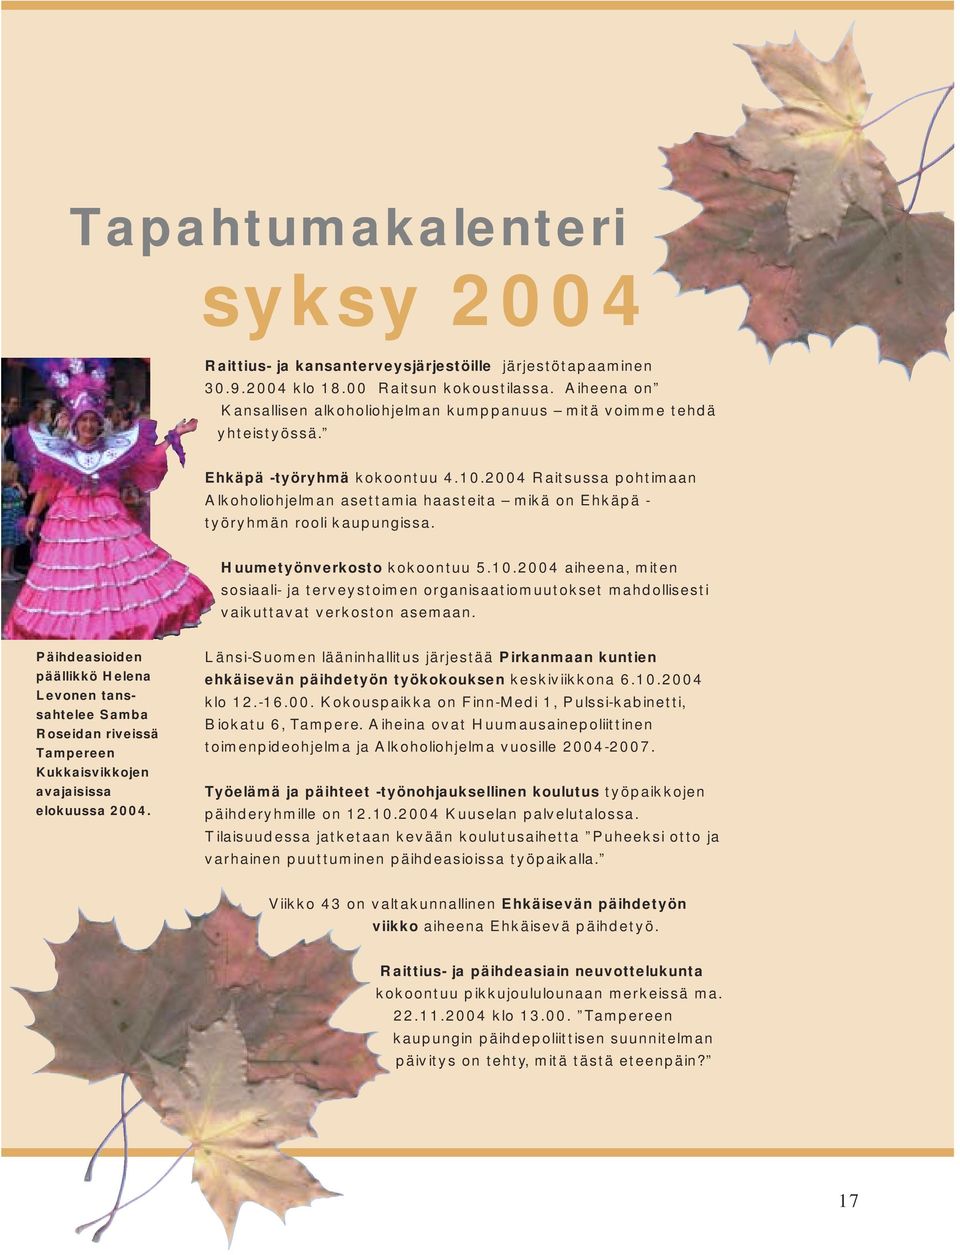 2004 Raitsussa pohtimaan Alkoholiohjelman asettamia haasteita mikä on Ehkäpä - työryhmän rooli kaupungissa. Huumetyönverkosto kokoontuu 5.10.